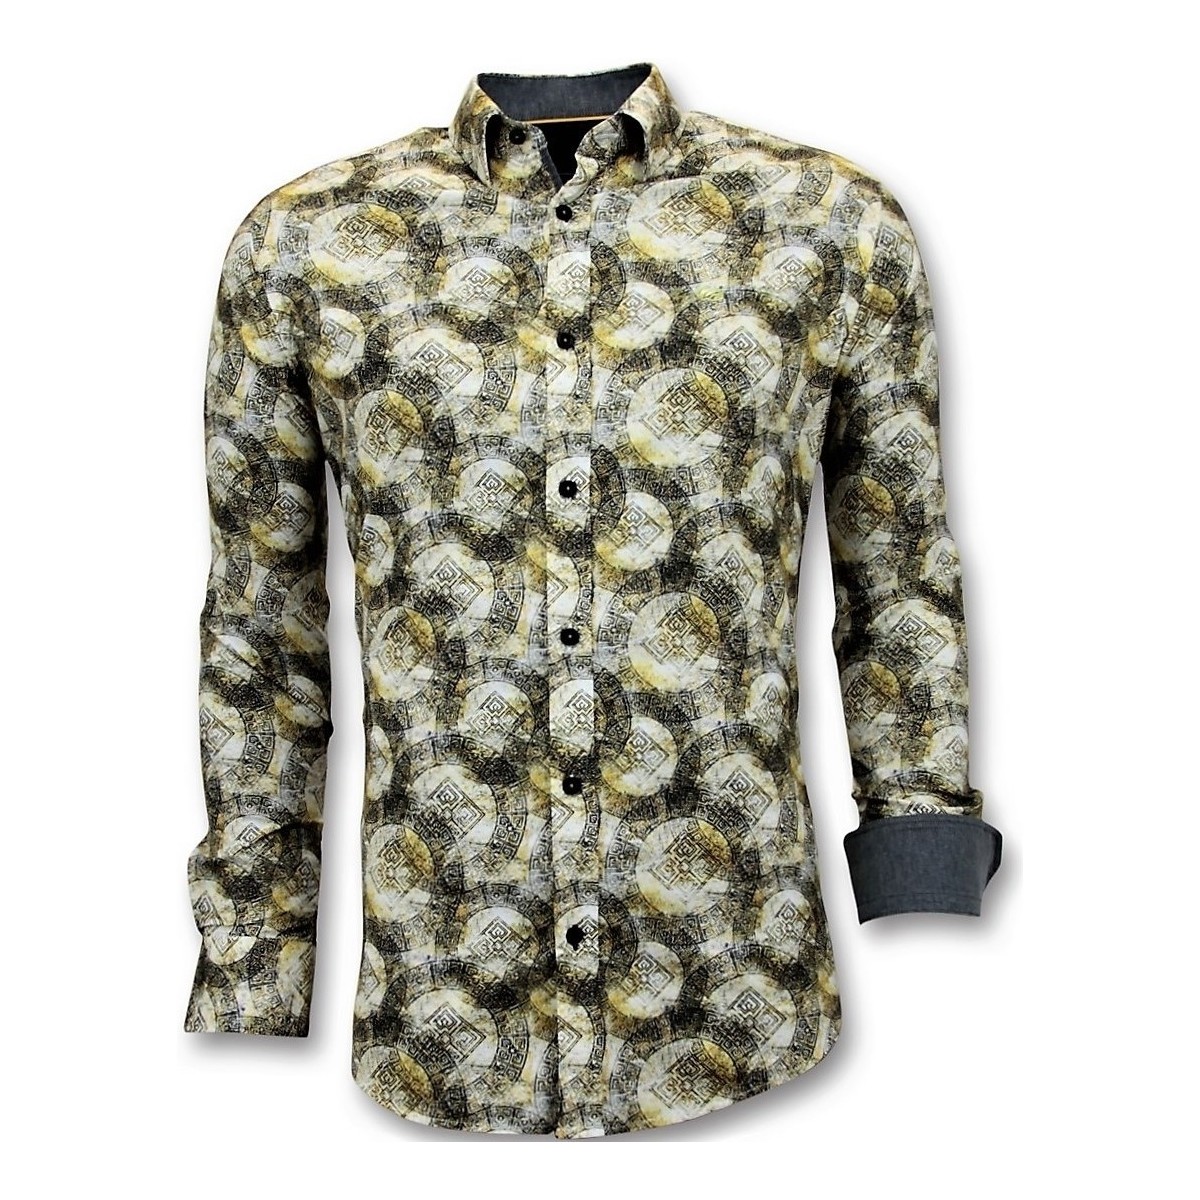 Textiel Heren Overhemden lange mouwen Tony Backer Luxe Digitale Print Geel